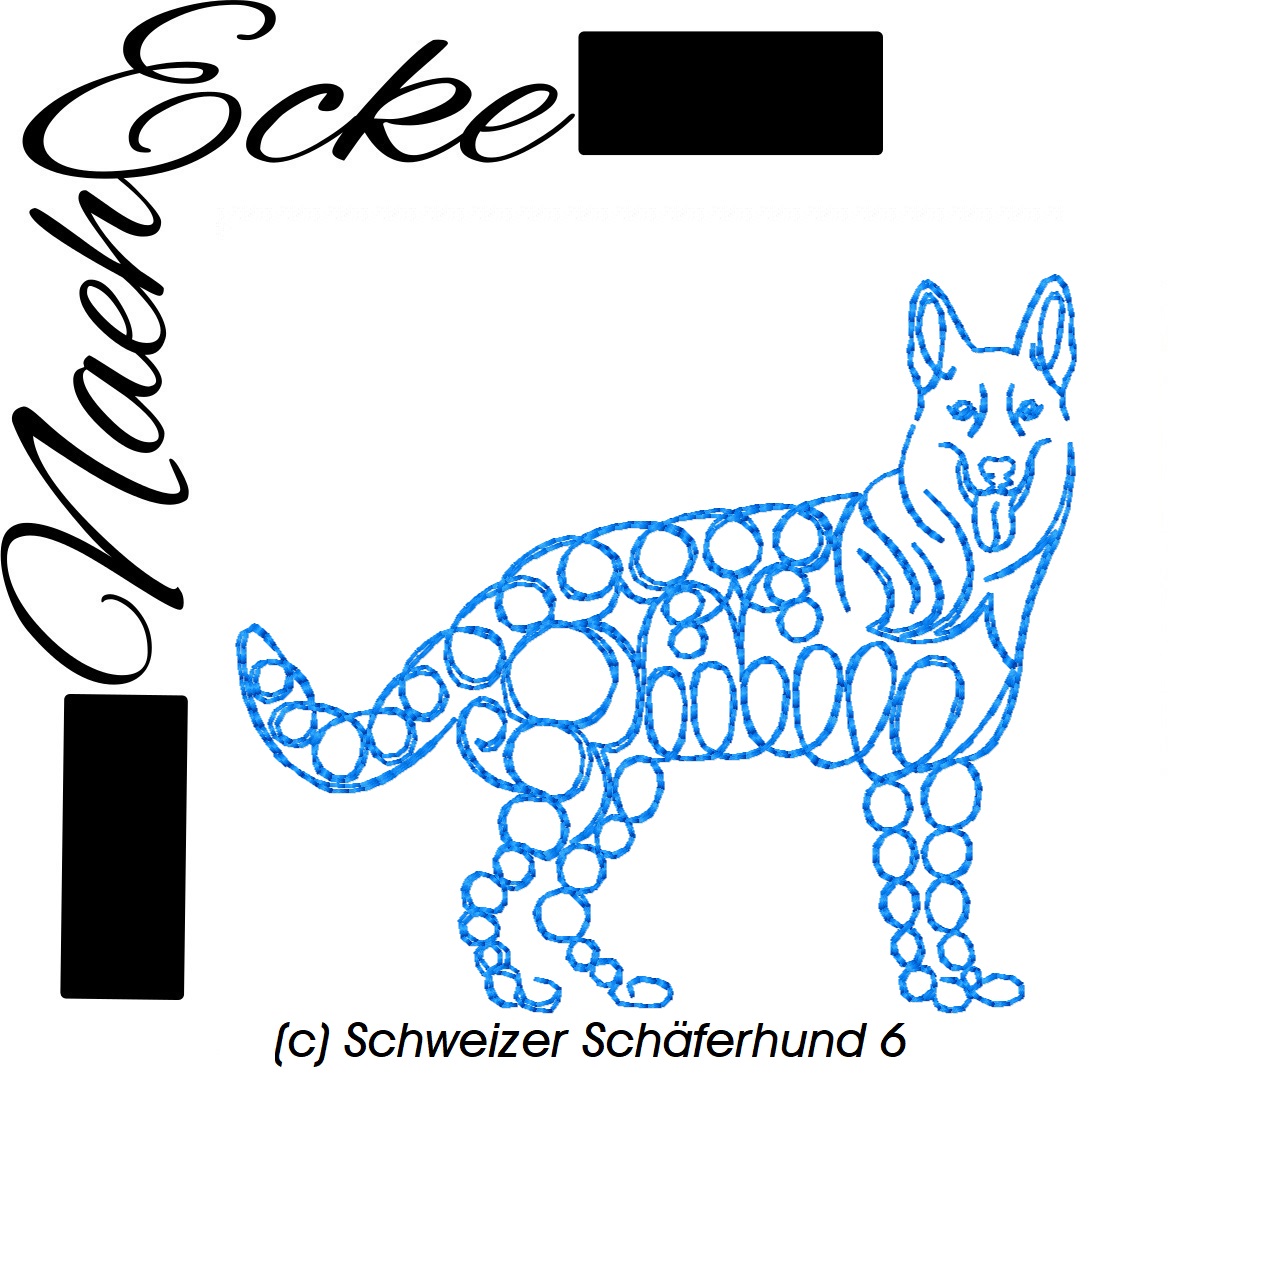 Schweizer Schäferhund 6